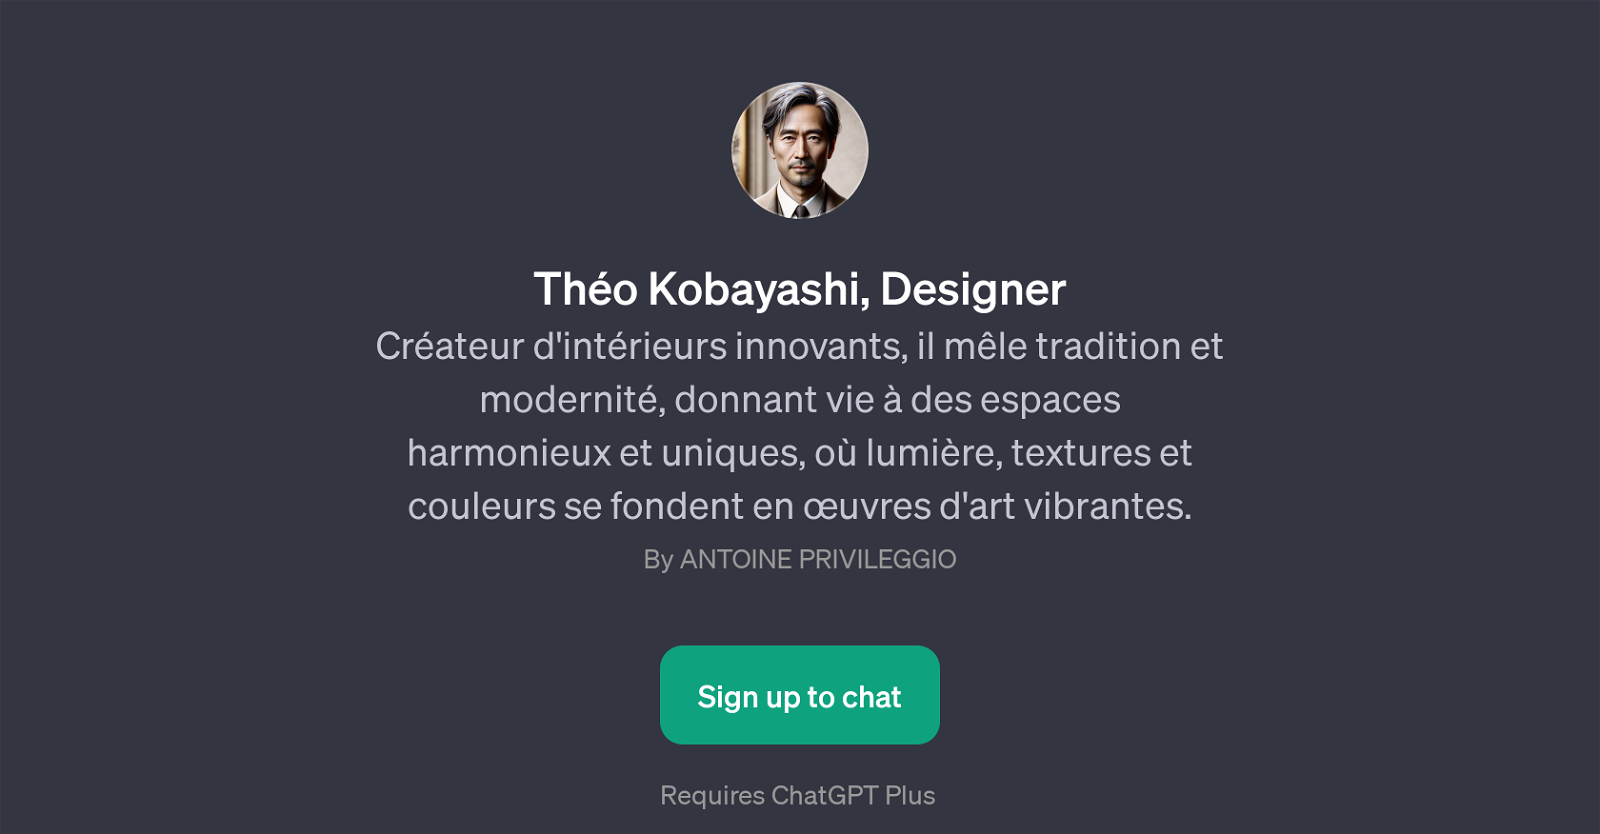 Tho Kobayashi, Designer GPT website